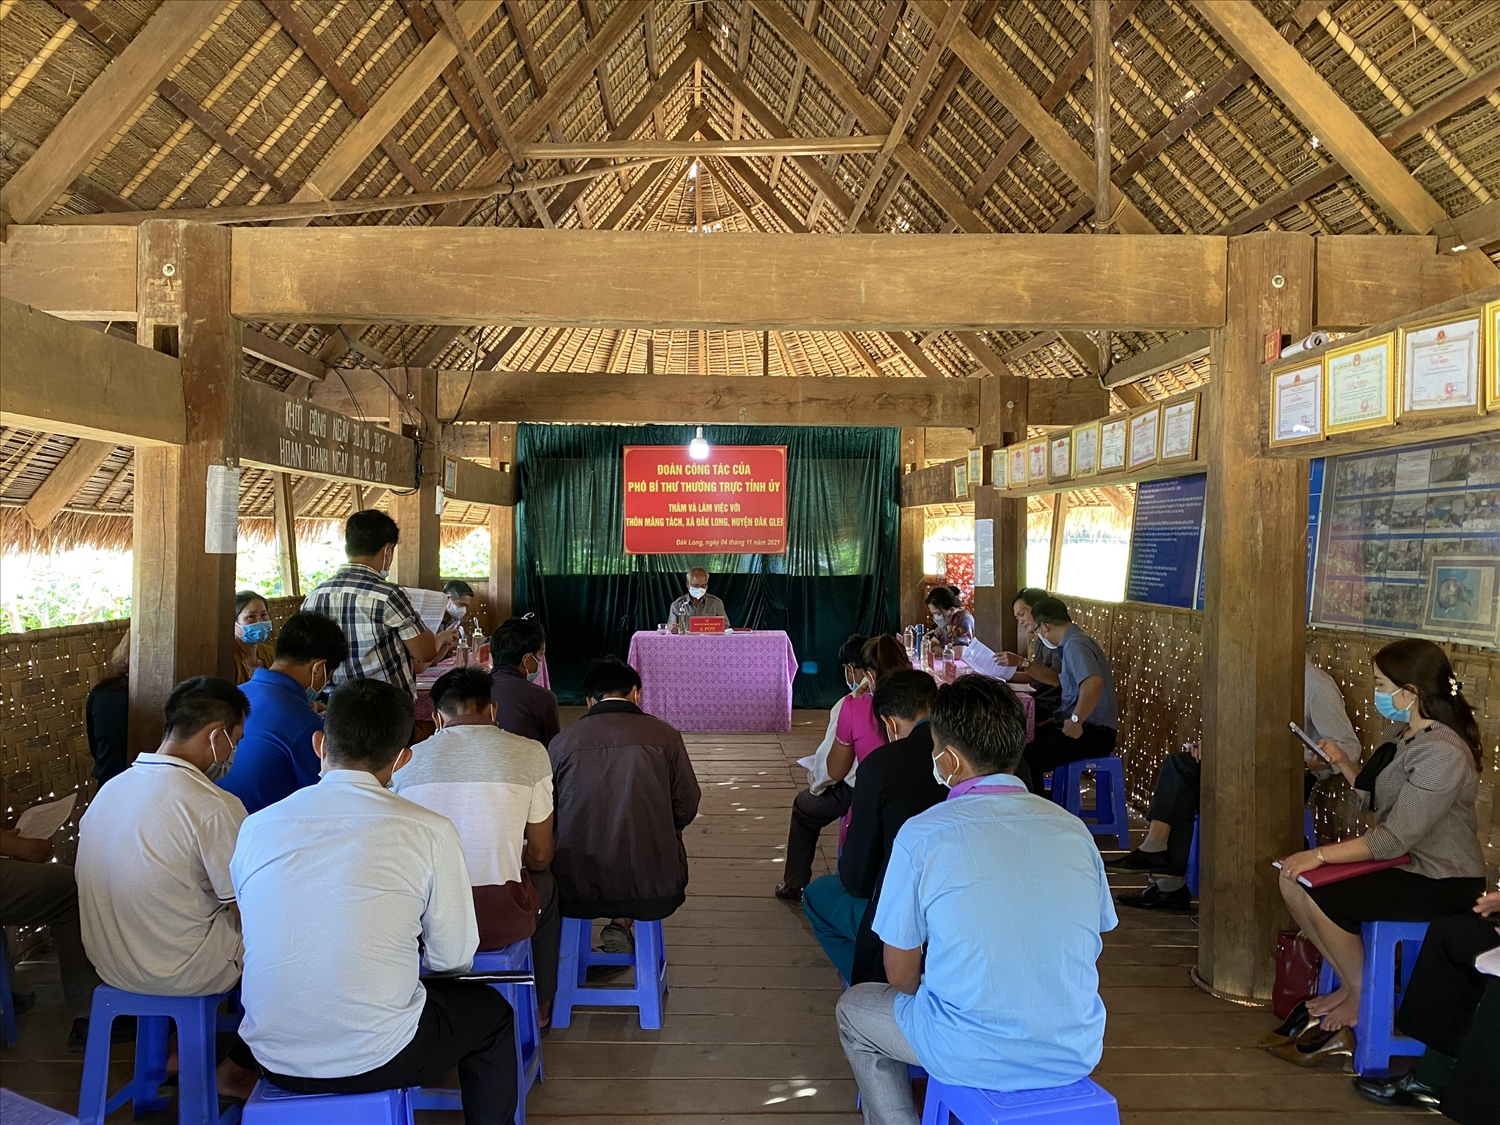 Nhờ làm tốt công tác phát triển đảng viên, hiện 100% thôn, làng, tổ dân phố trên địa bàn tỉnh Kon Tum có tổ chức đảng